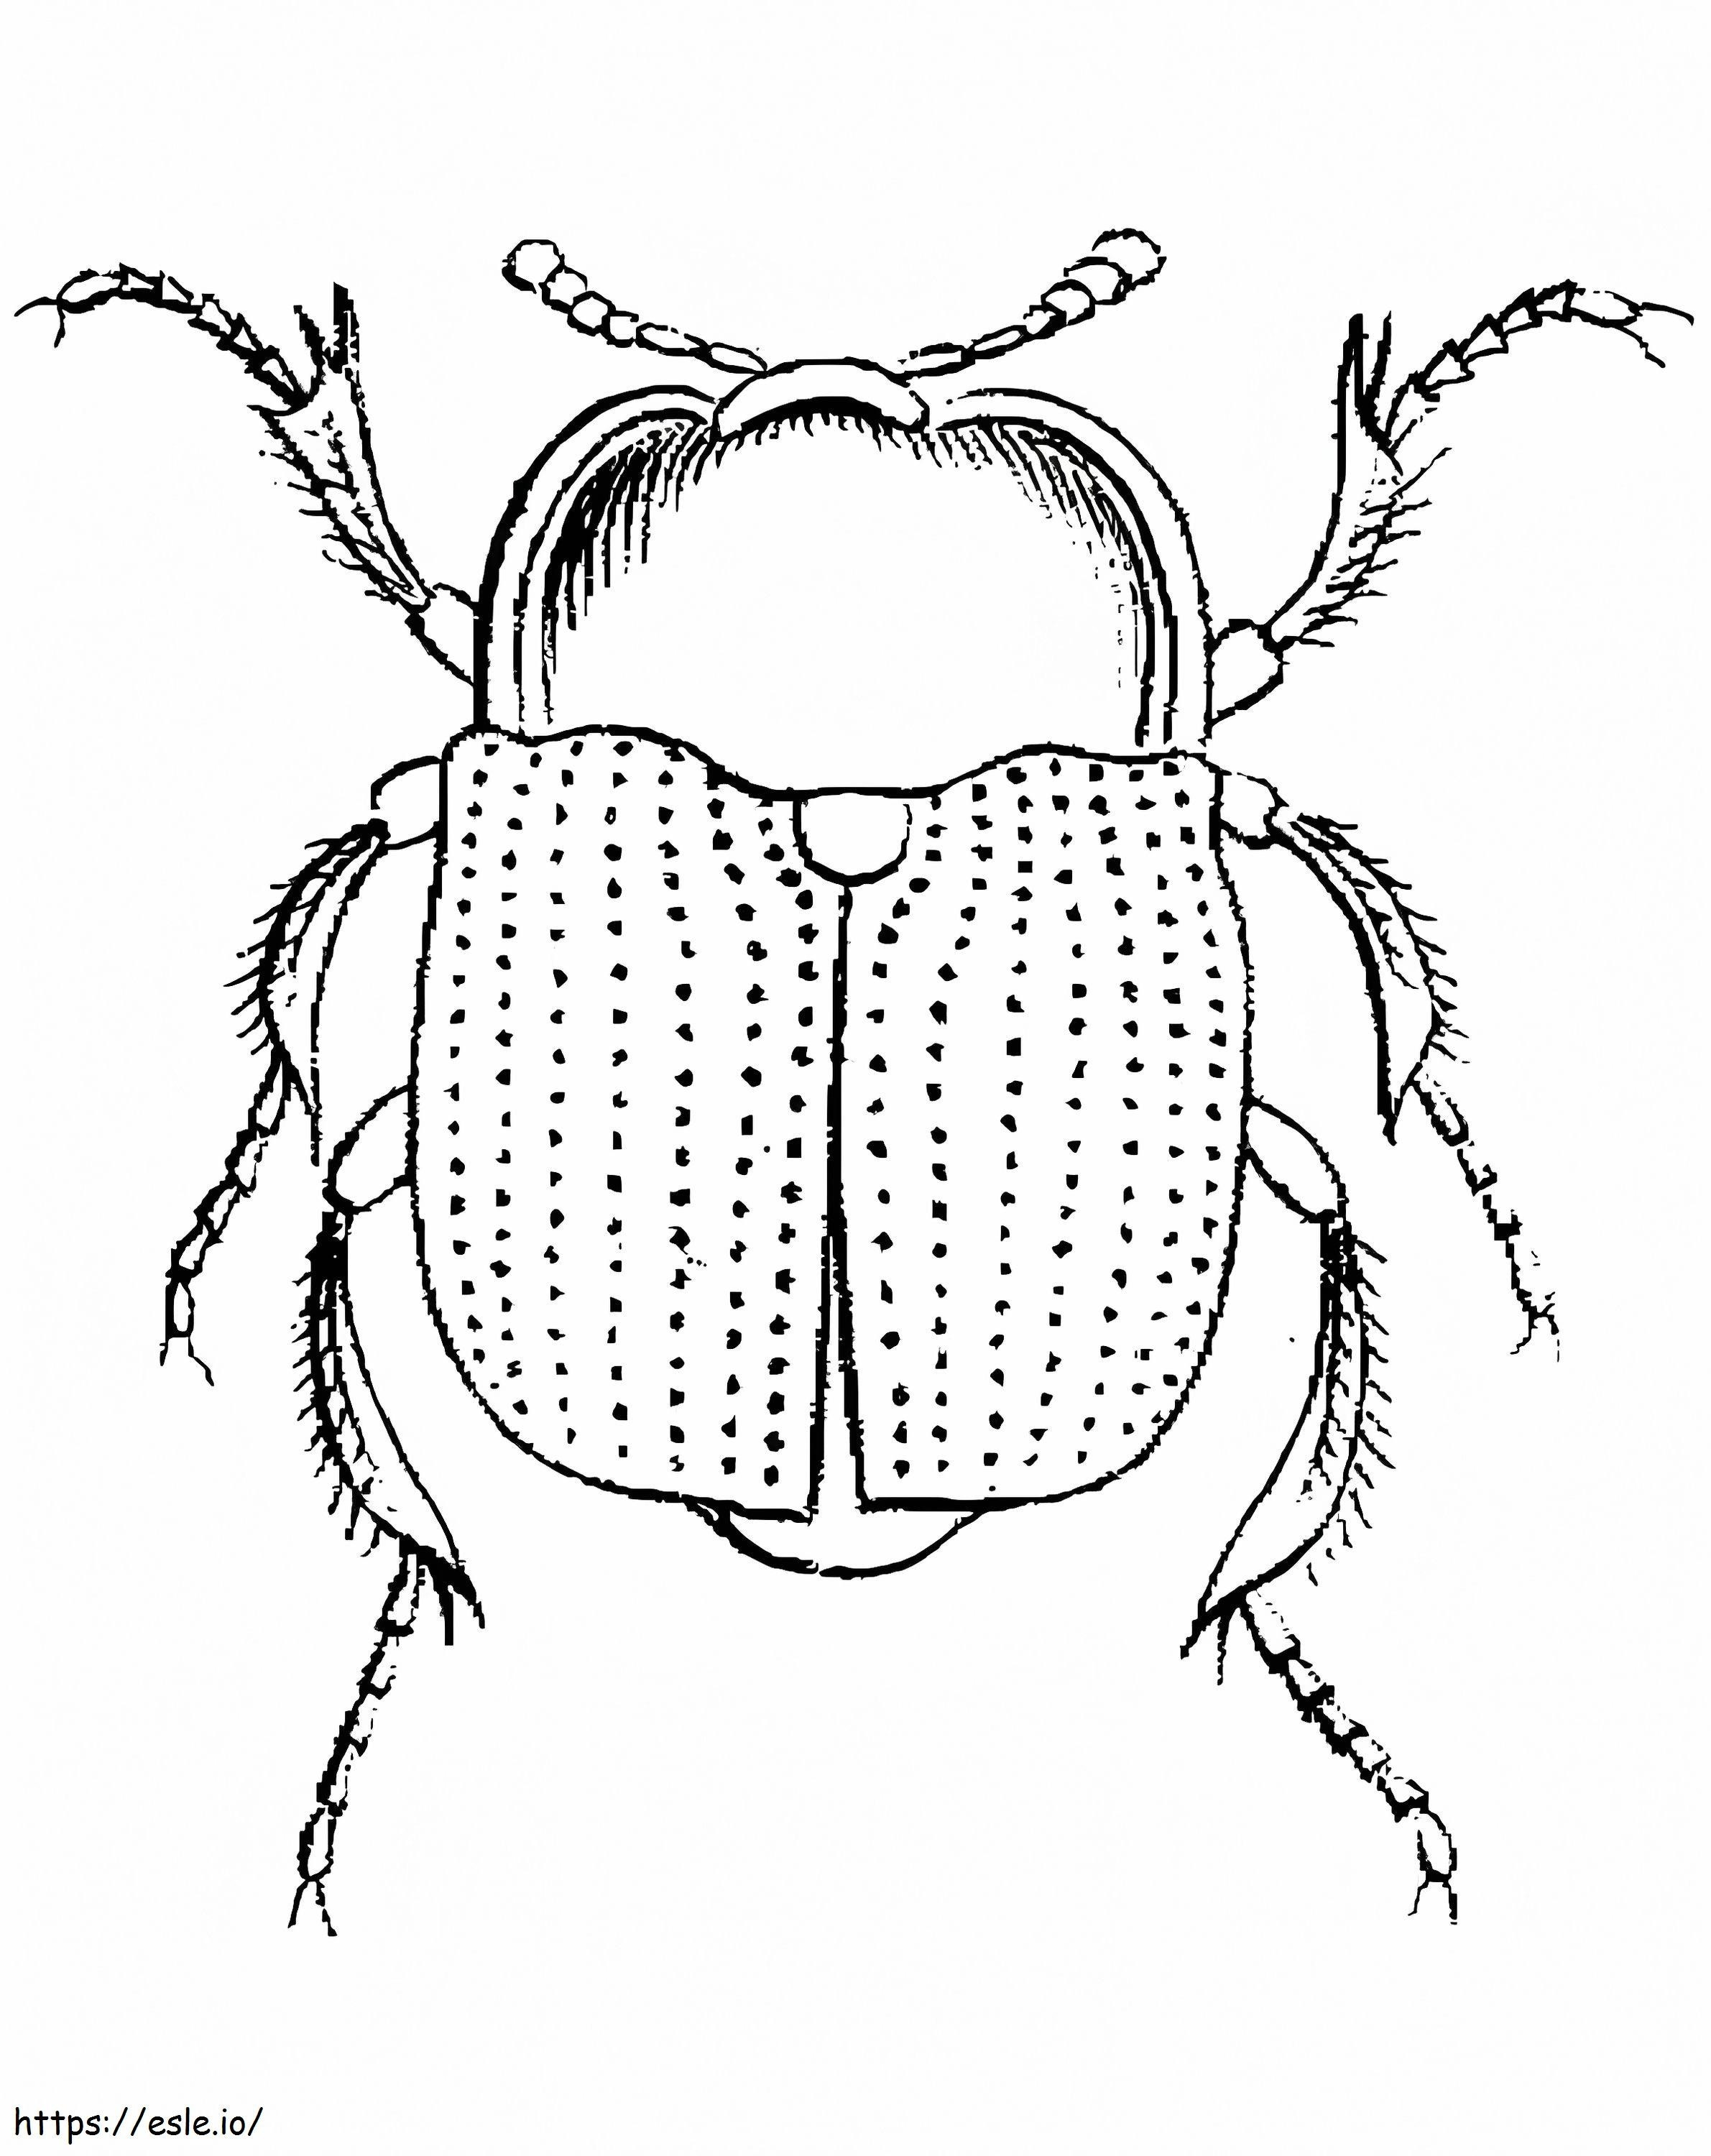 Ein Käfer ausmalbilder